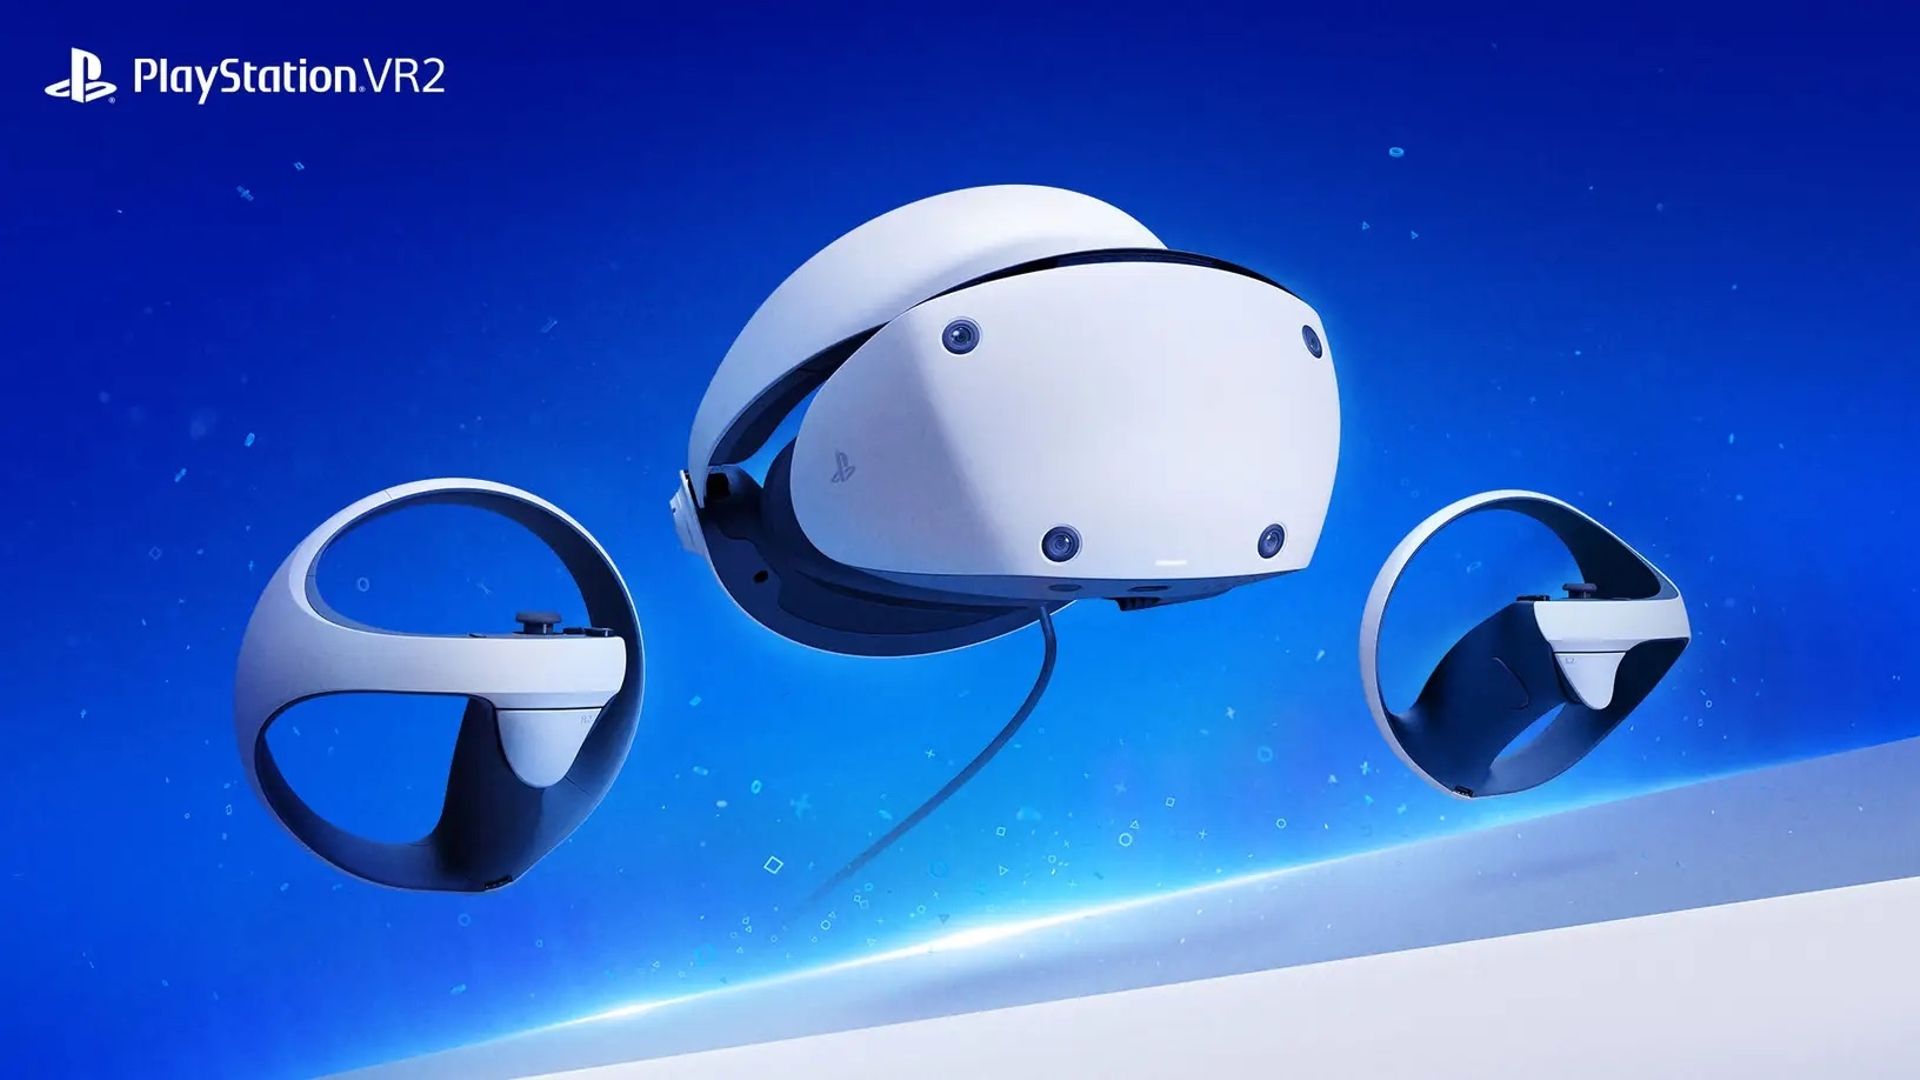 Les 10 premiers jeux PSVR 2 ✨ Du LOURD arrive sur PlayStation VR 2 ✨ 